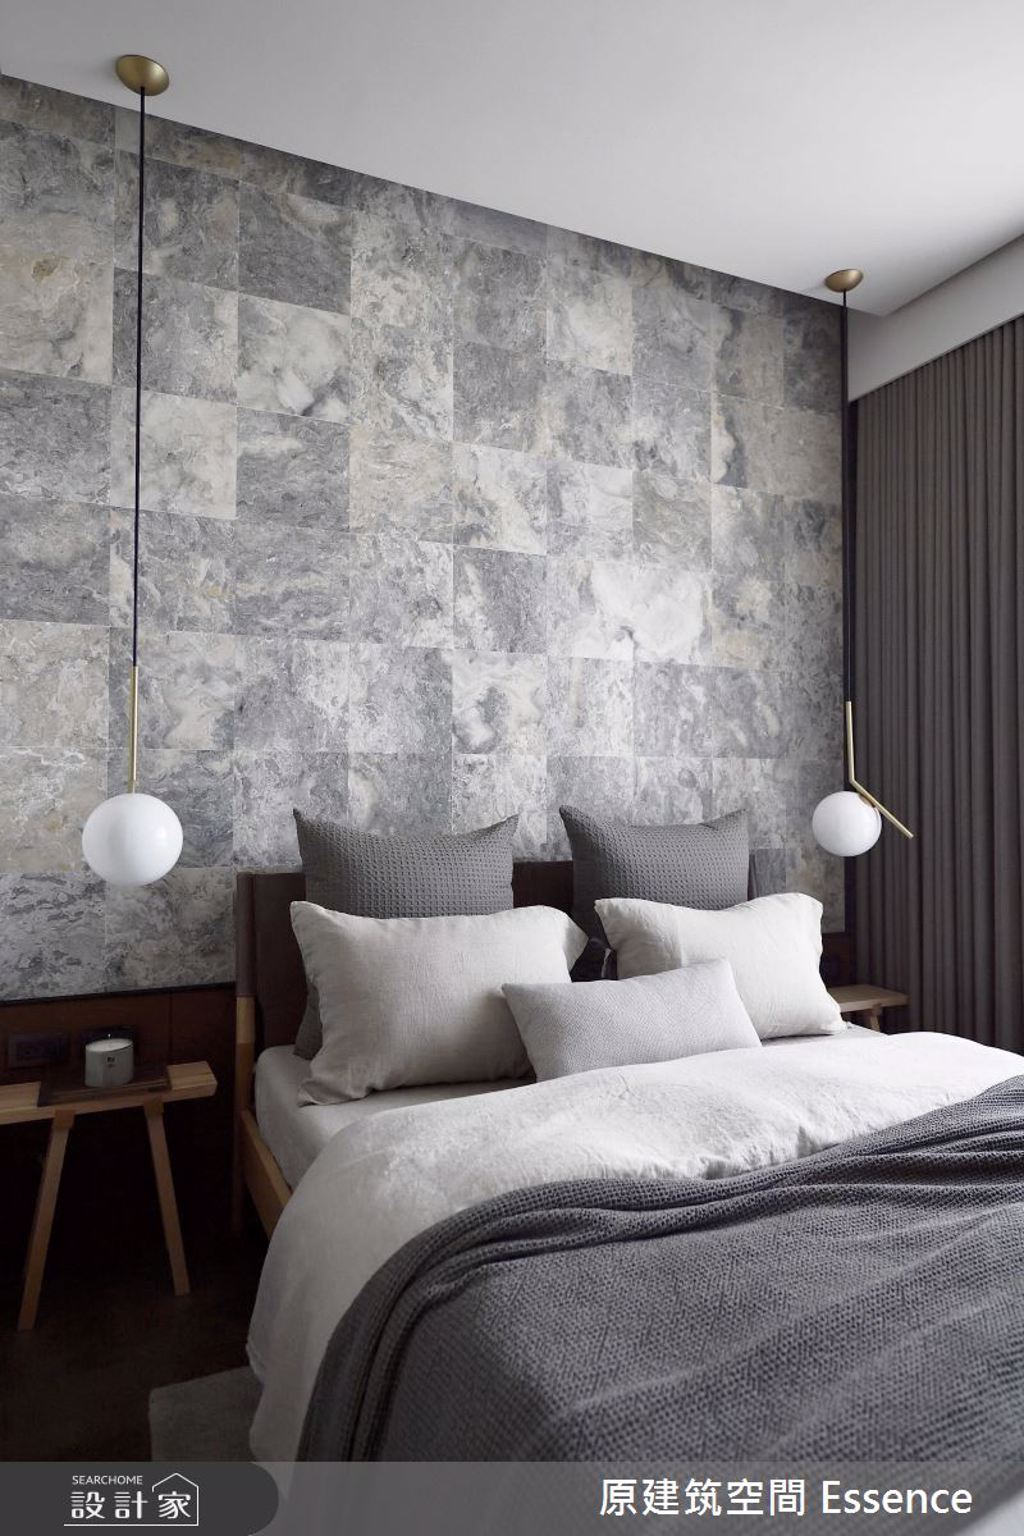 床頭背牆以台灣特有大理石做幾何拼接，灰階色調的紋理，搭配細緻的金屬燈飾，創造理性秩序和感性藝術的對話。(圖/設計家)